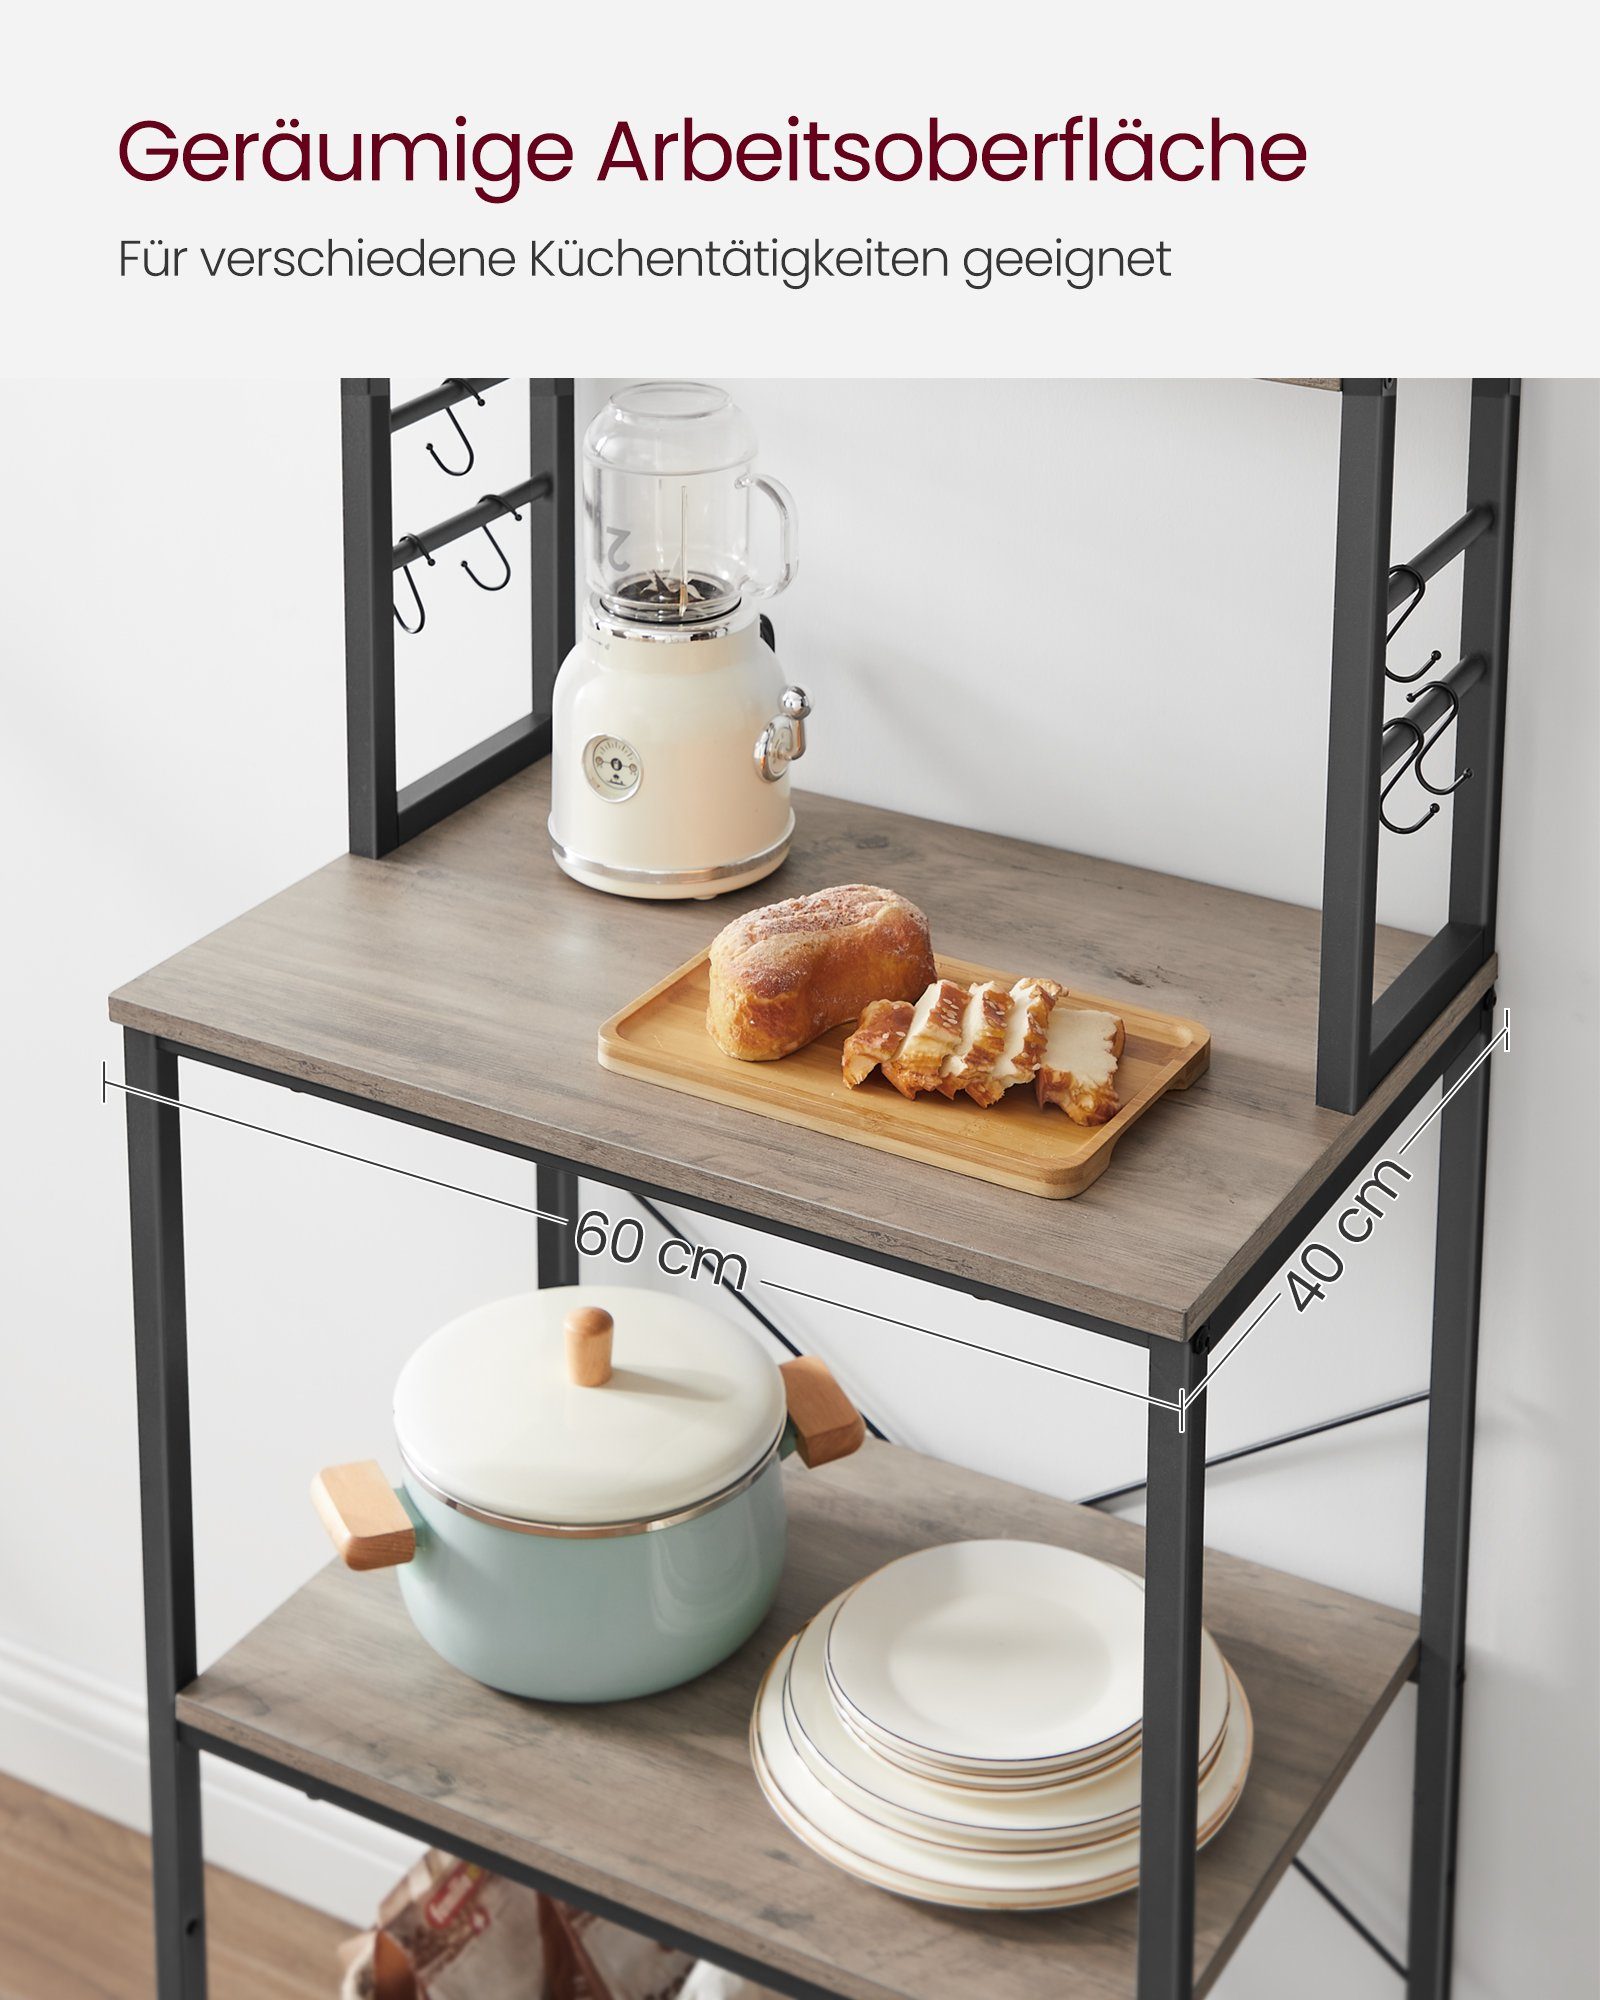 VASAGLE Standregal, Küchenregal mit 6 x Haken, 40 x 60 cm(TxBxH) 167 Greige-schwarz